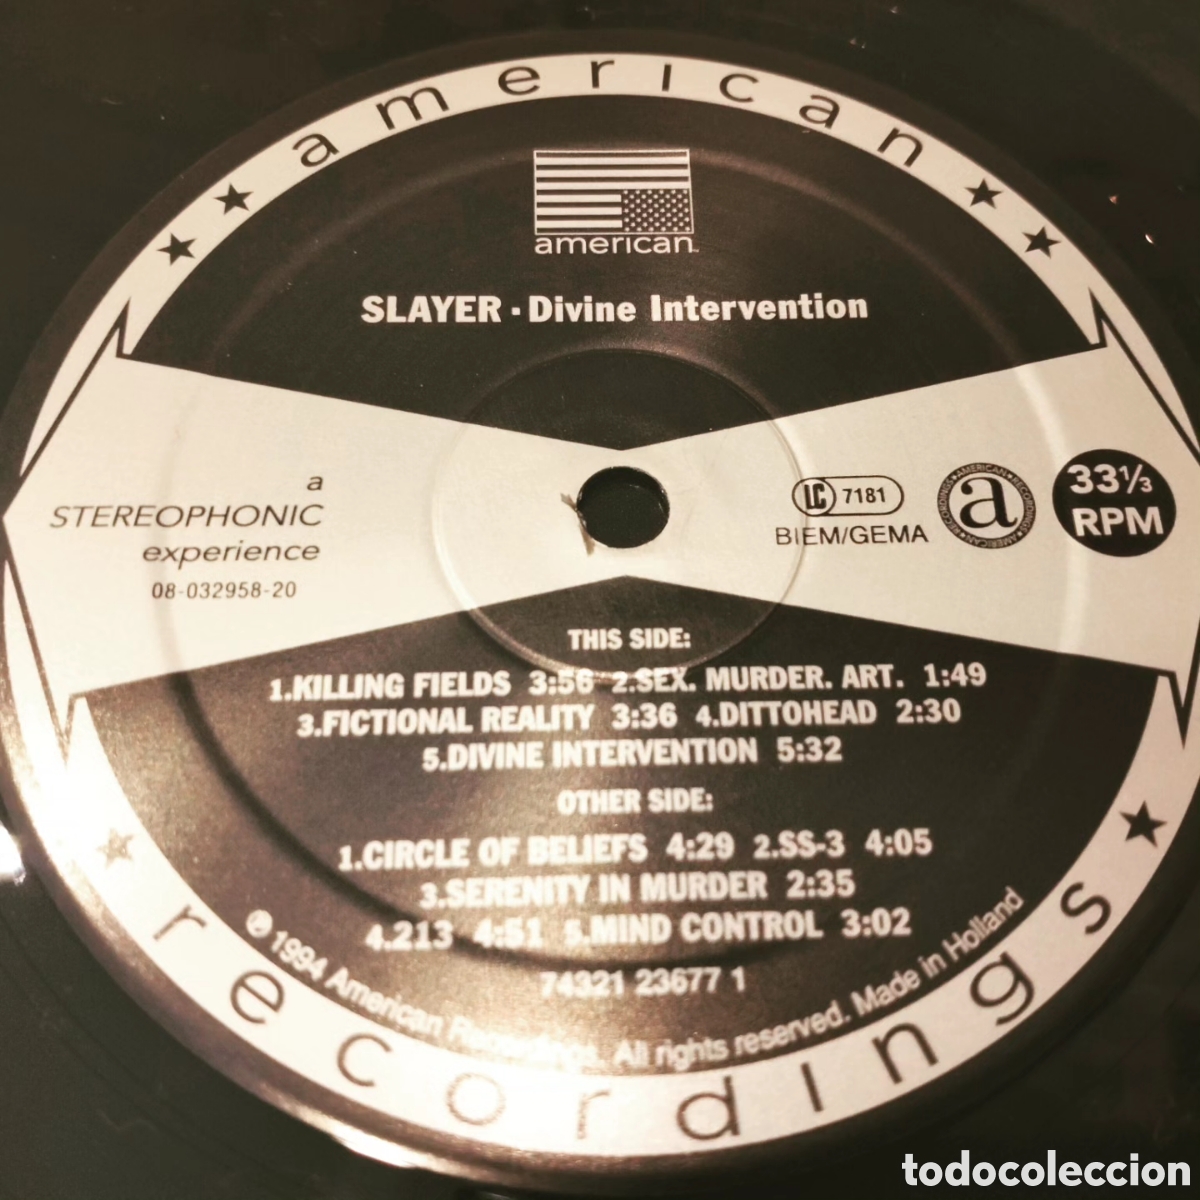 slayer show no mercy vinilo lp - Buy LP vinyl records of Heavy Metal Music  on todocoleccion